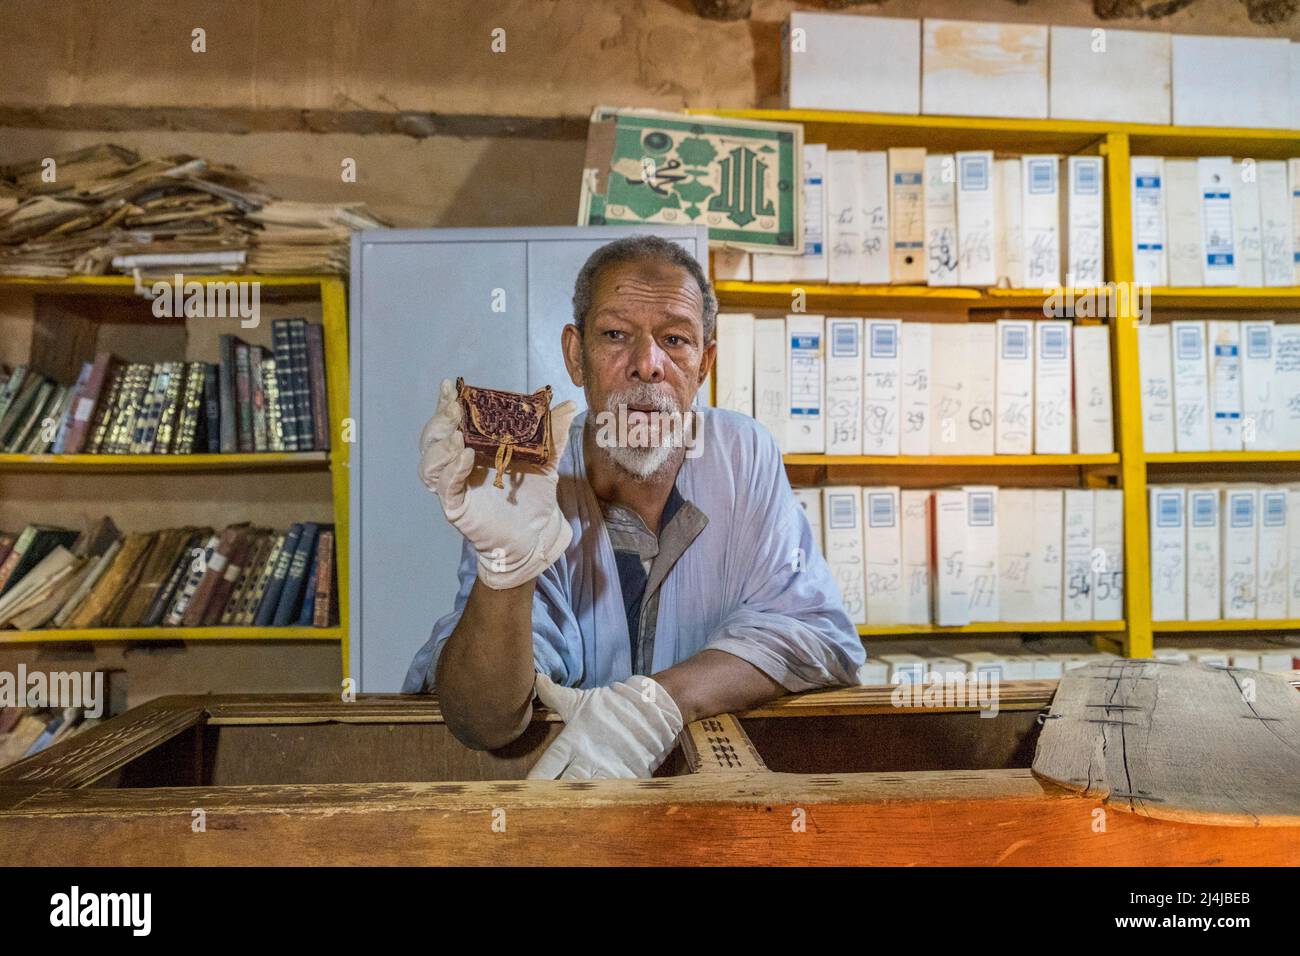 Mauritania, Chinguetti, Biblioteca islámica, Saif Al Islam, curador de la biblioteca Ahmed Mahmoud, Patrimonio de la Humanidad de la UNESCO Foto de stock